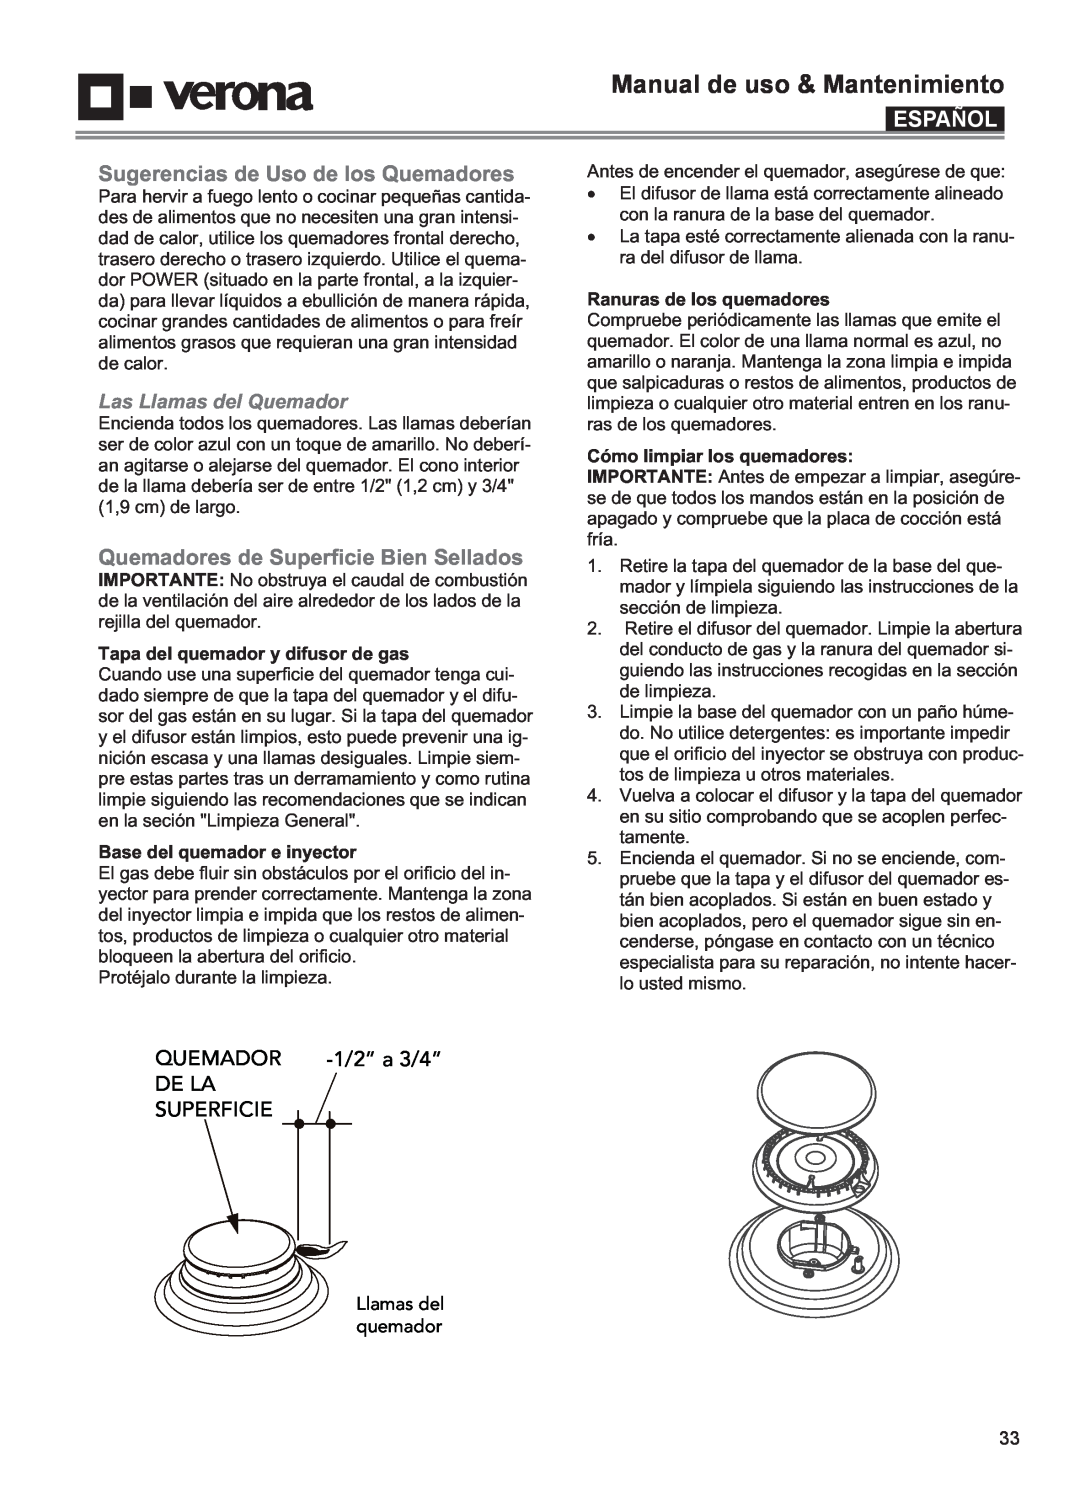 Verona VECTGV304SS manual Sugerencias de Uso de los Quemadores, Quemadores de Superficie Bien Sellados, 1/2” a 3/4”, De La 